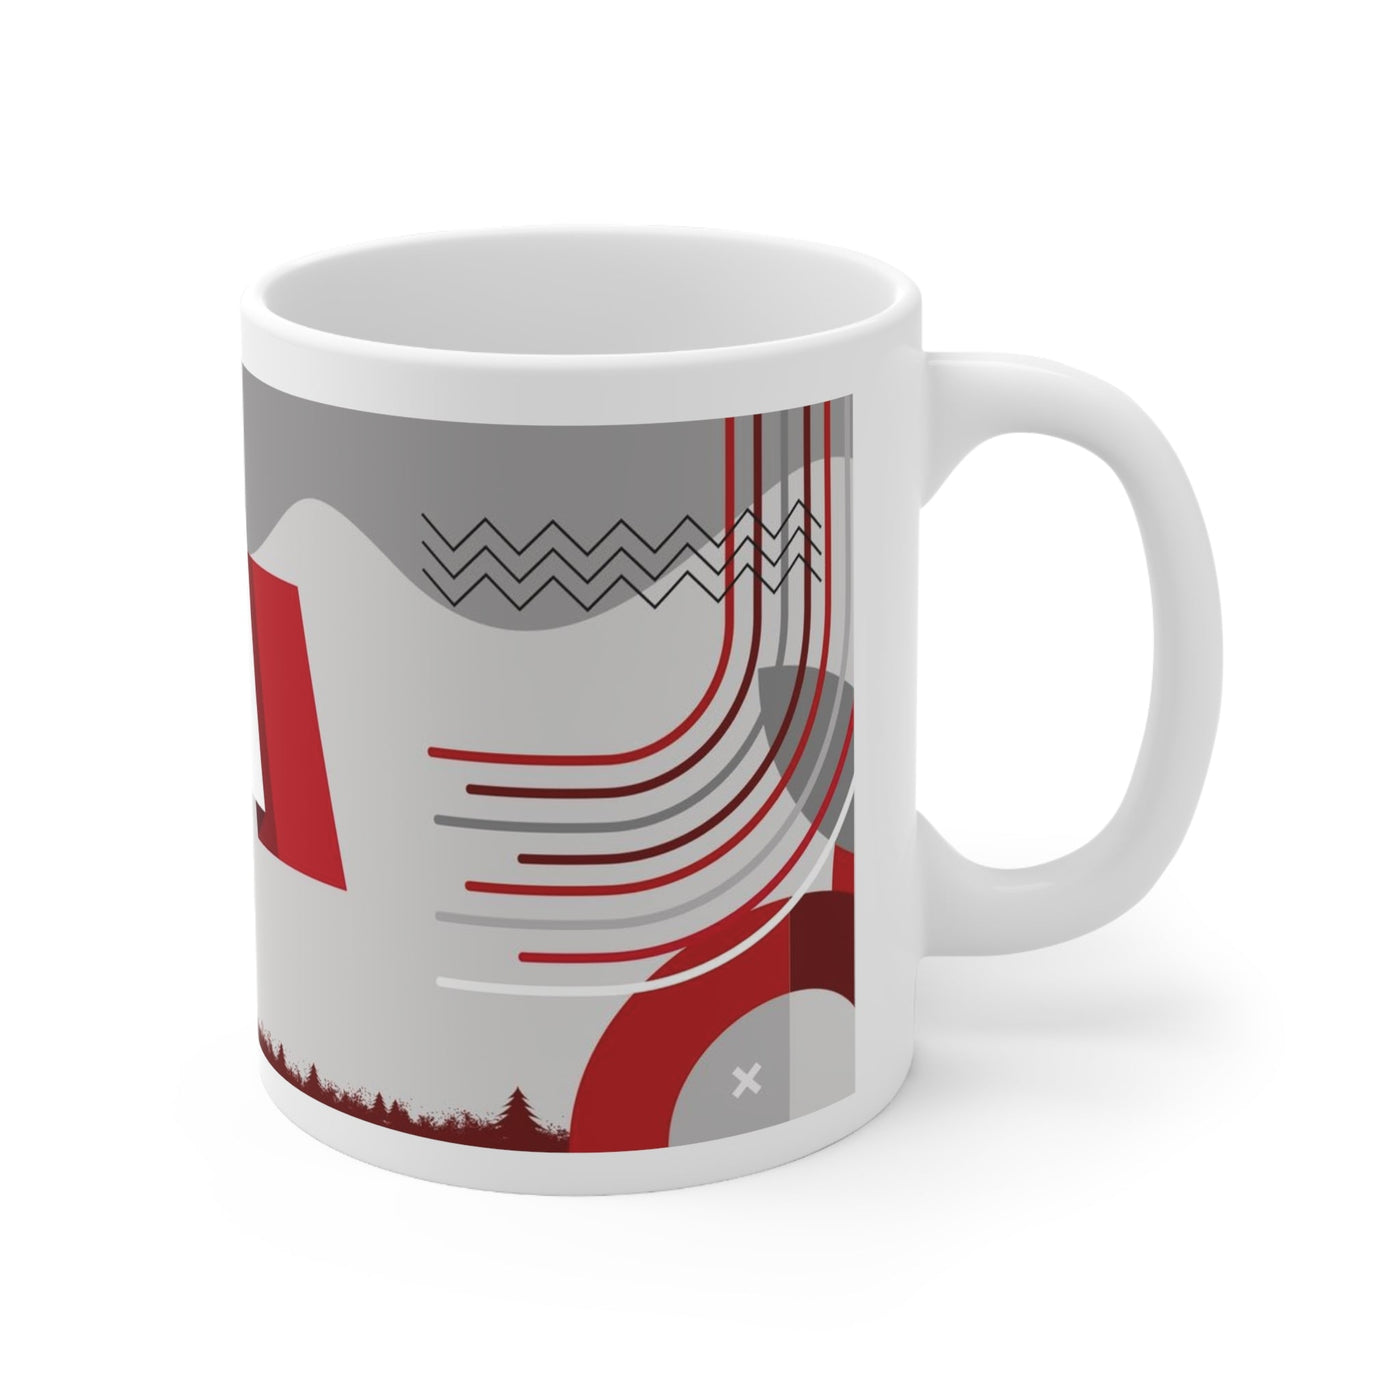 Peru Coffee Mug - Ezra's Clothing